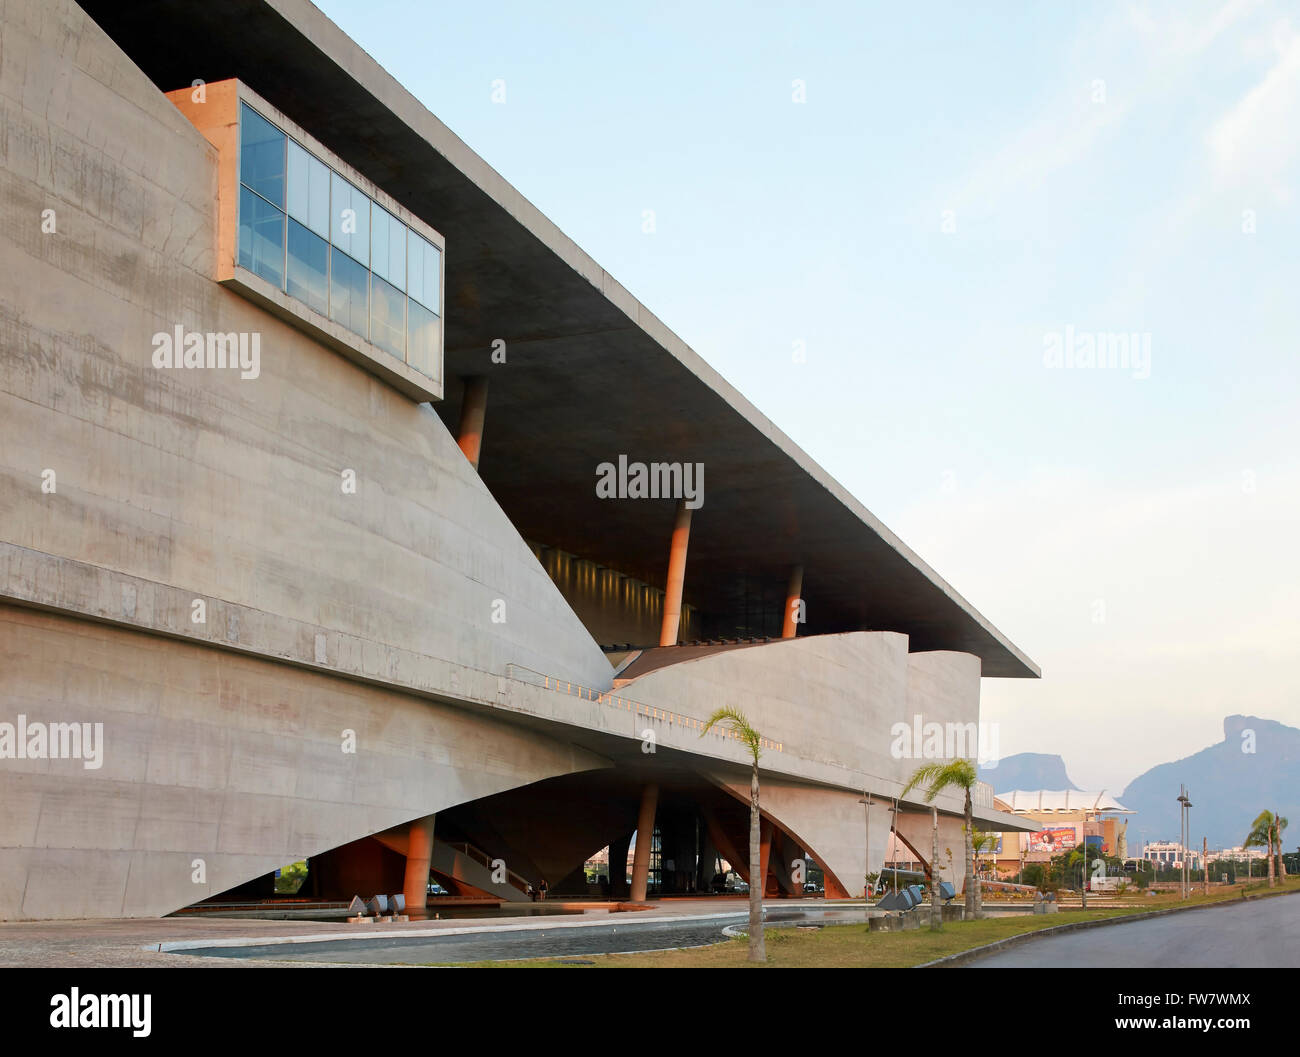 Élévation façade oblique. La Cidade das Artes, Barra da Tijuca, le Brésil. Architecte : Christian de Portzamparc, 2014. Banque D'Images